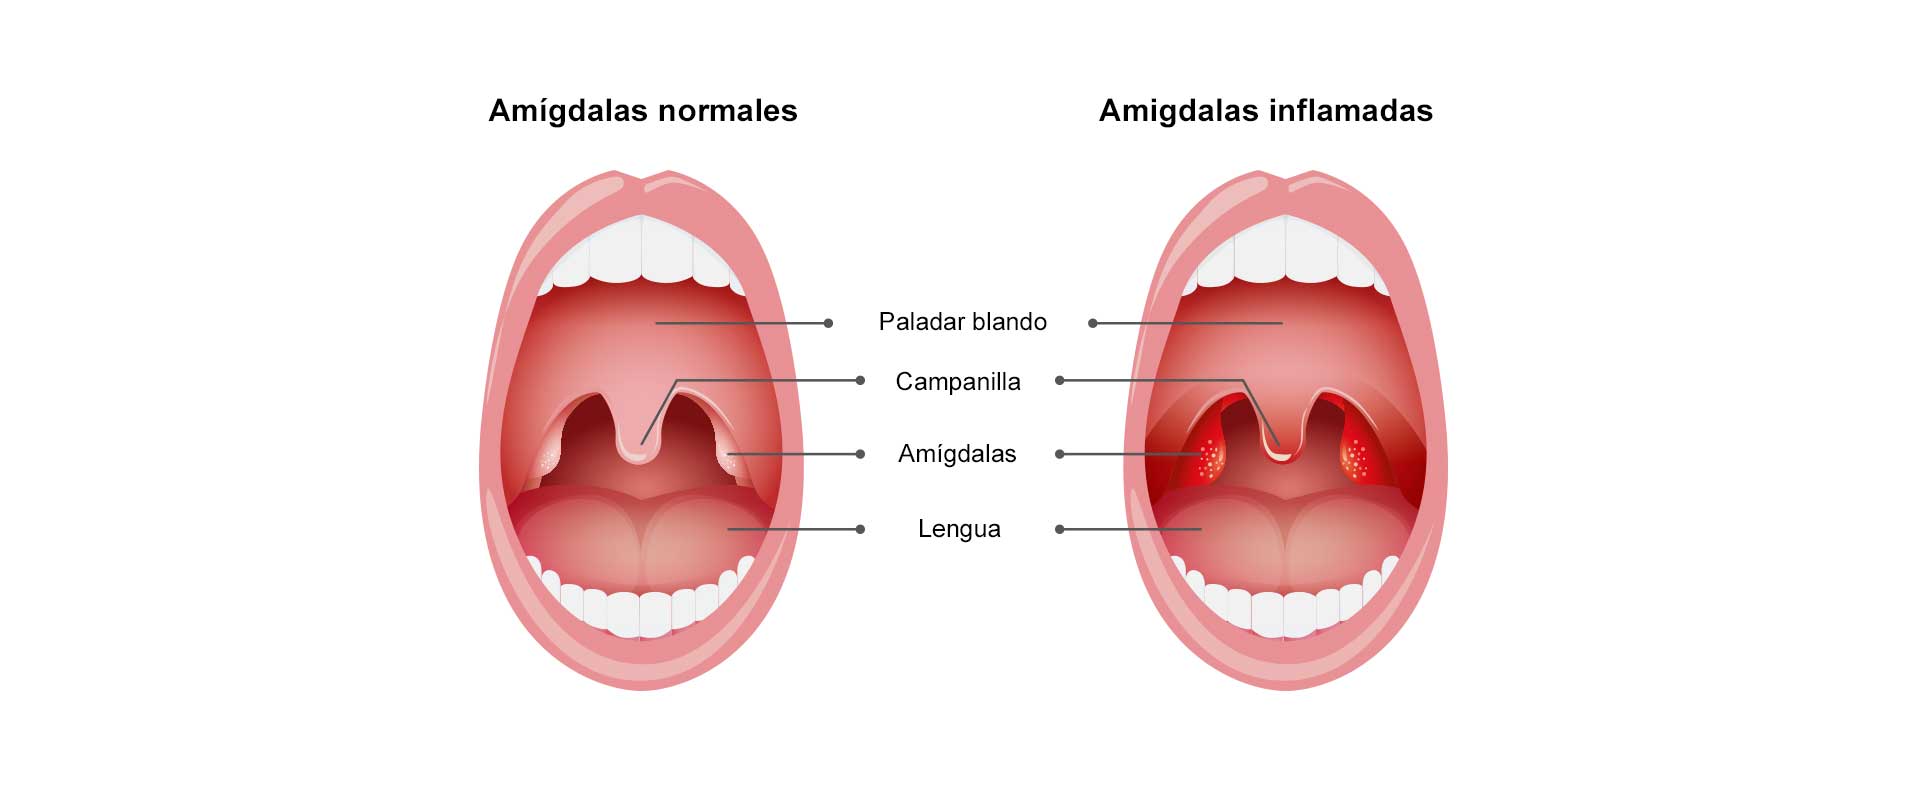 Infografia de 2 gargantas, una sana y otra con amigdalas inflamadas